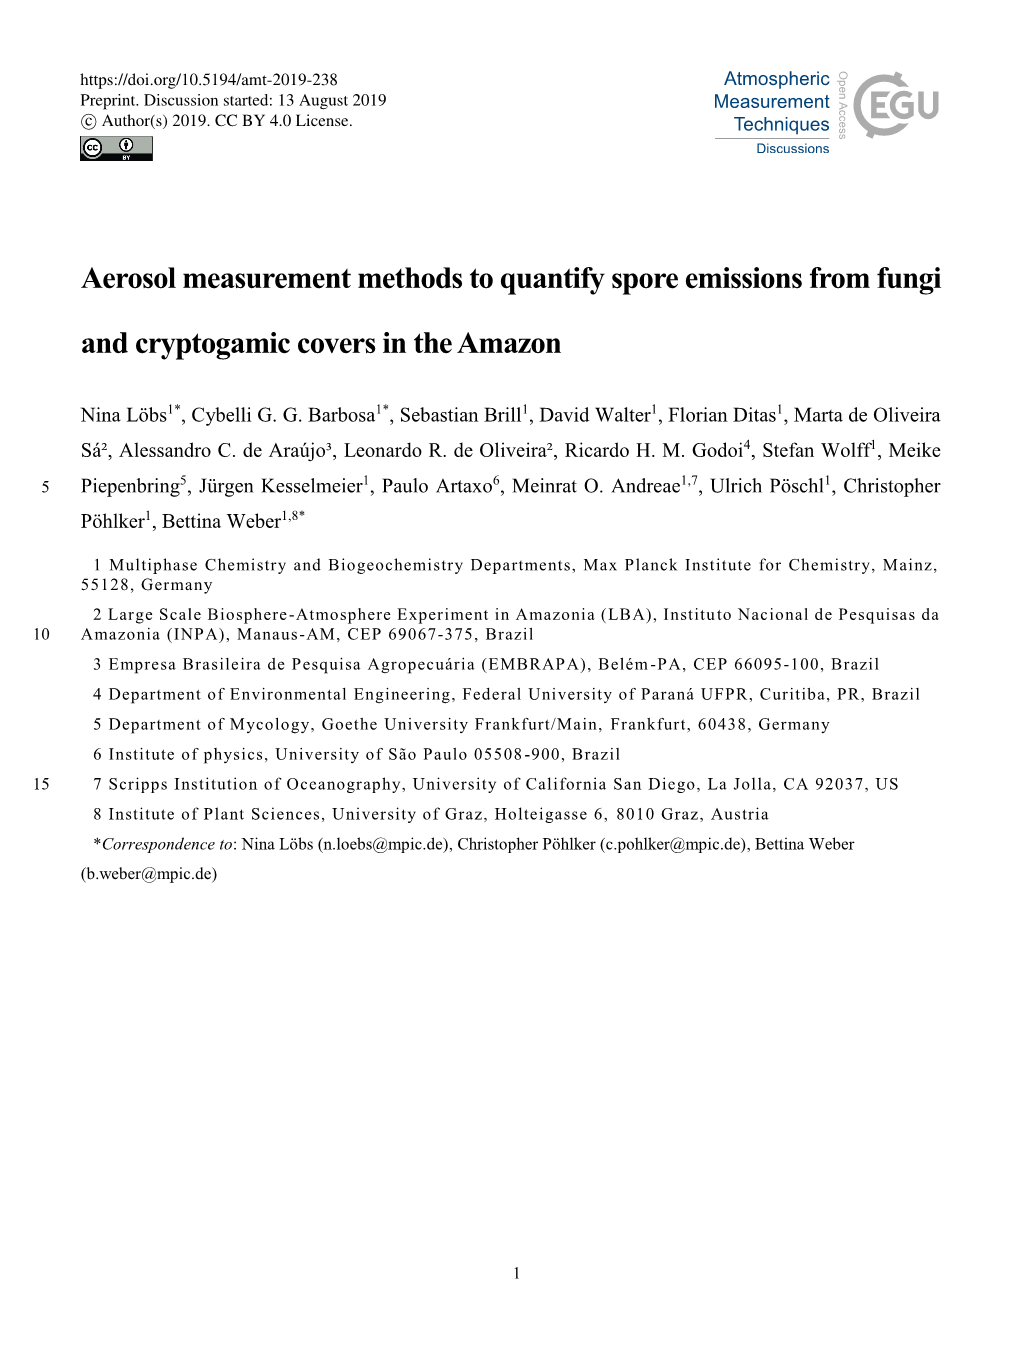 Aerosol Measurement Methods to Quantify Spore Emissions from Fungi